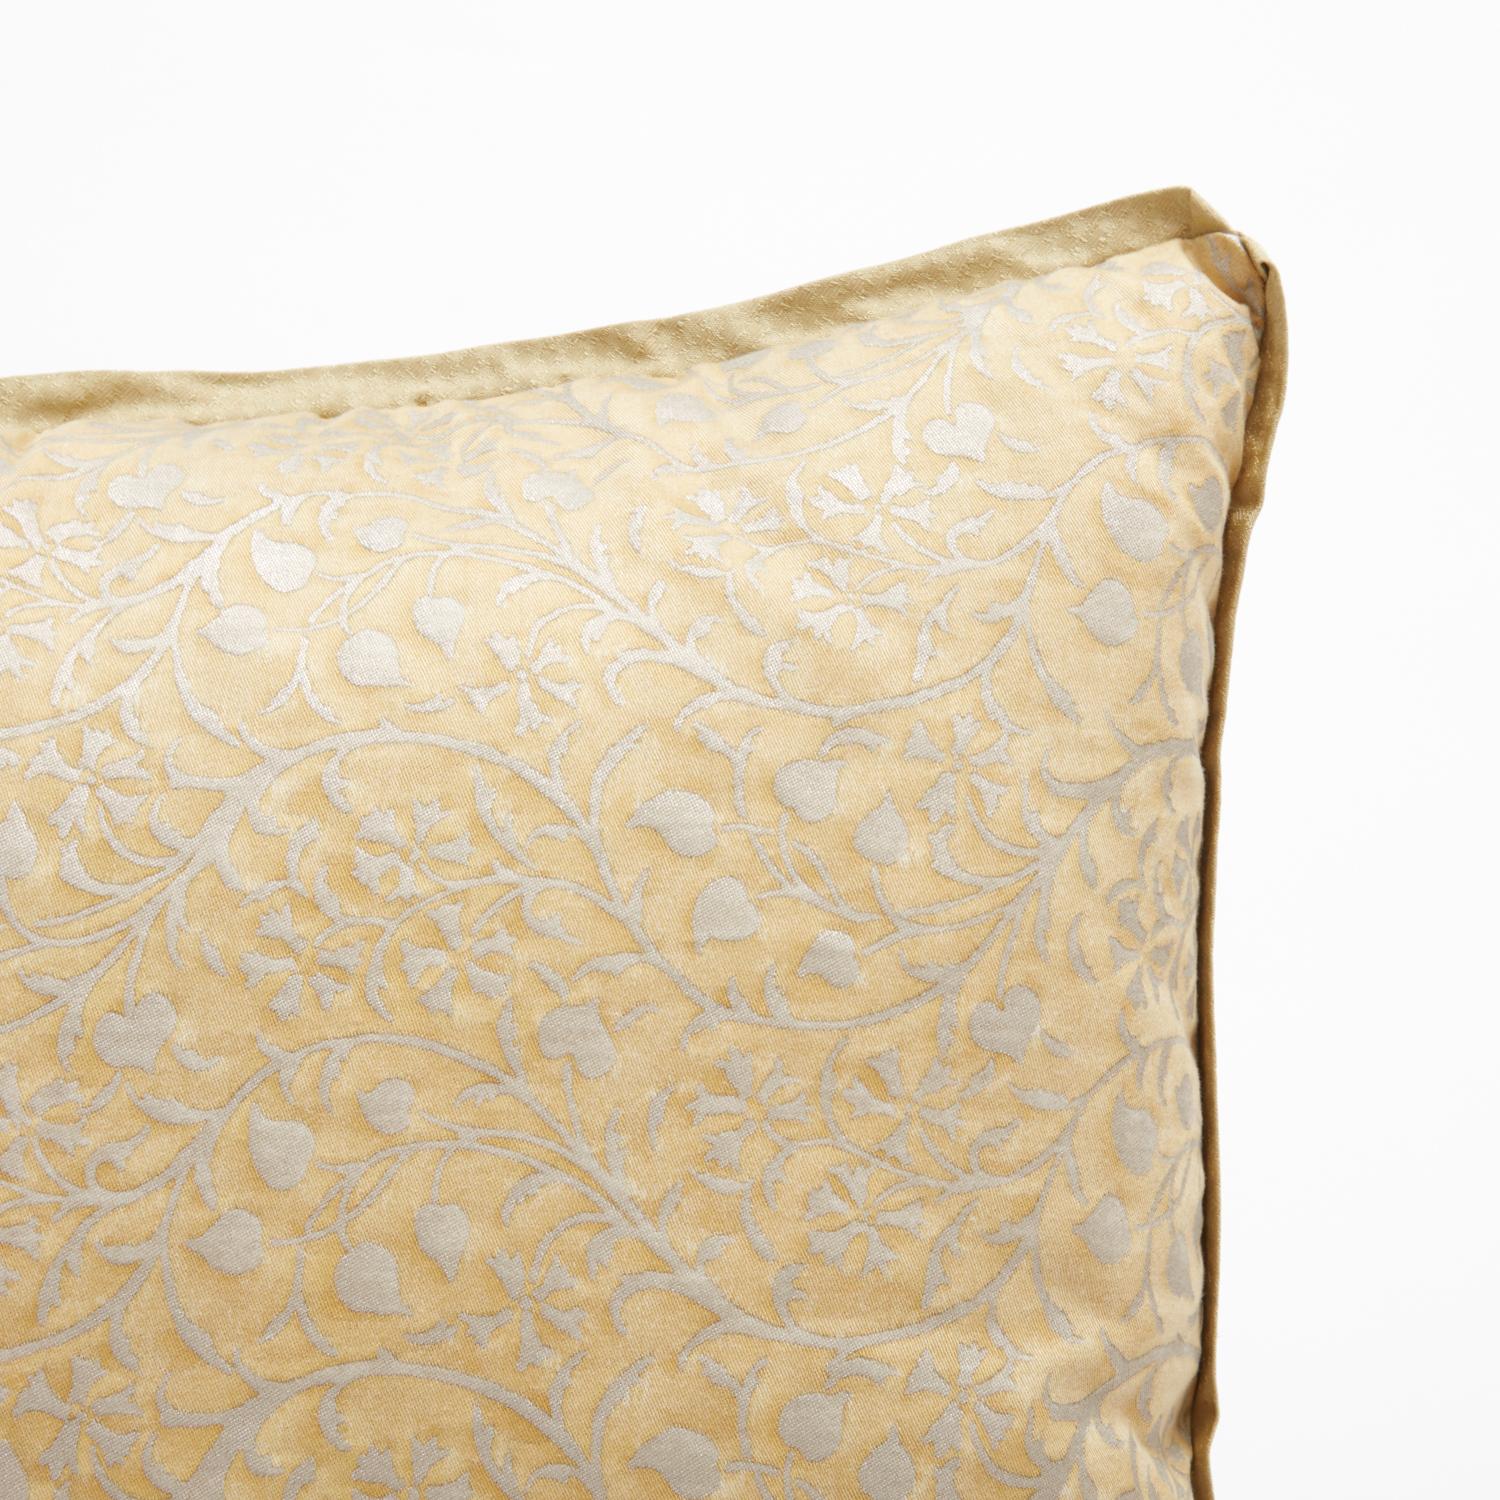 Ein Paar Fortuny-Stoffkissen mit dem Granada-Muster in einer schönen goldenen und silbrig-goldenen Farbgebung. Die Details dieser Kissen sind exquisit: Jedes Kissen hat einen Schrägbandrand aus Seide und ist mit einer goldenen Seidenunterlage